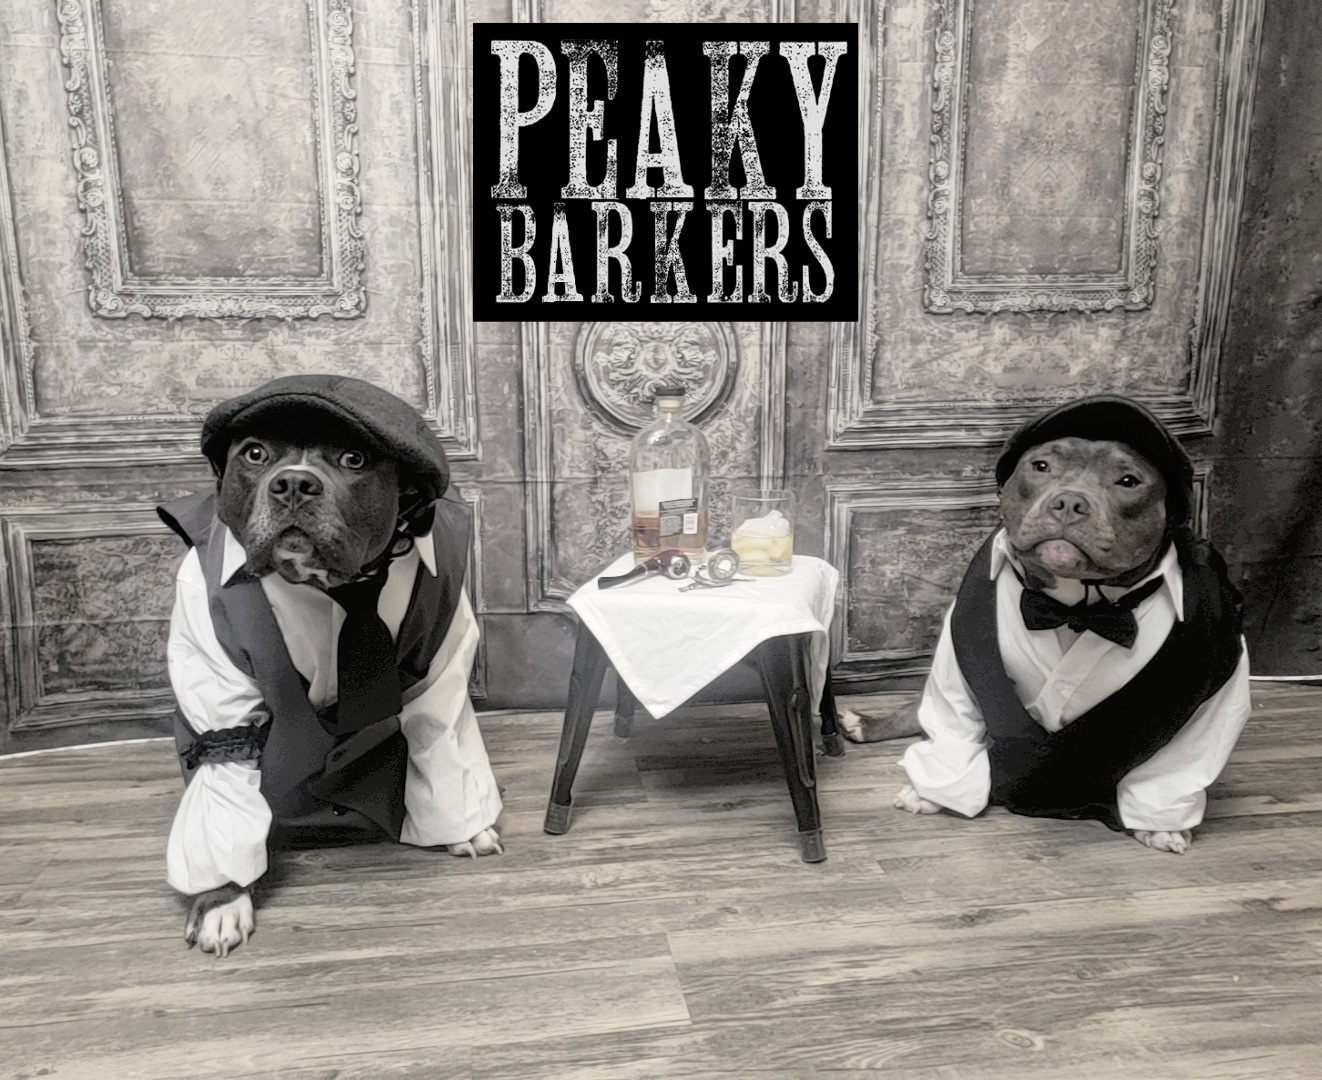 peaky barkers